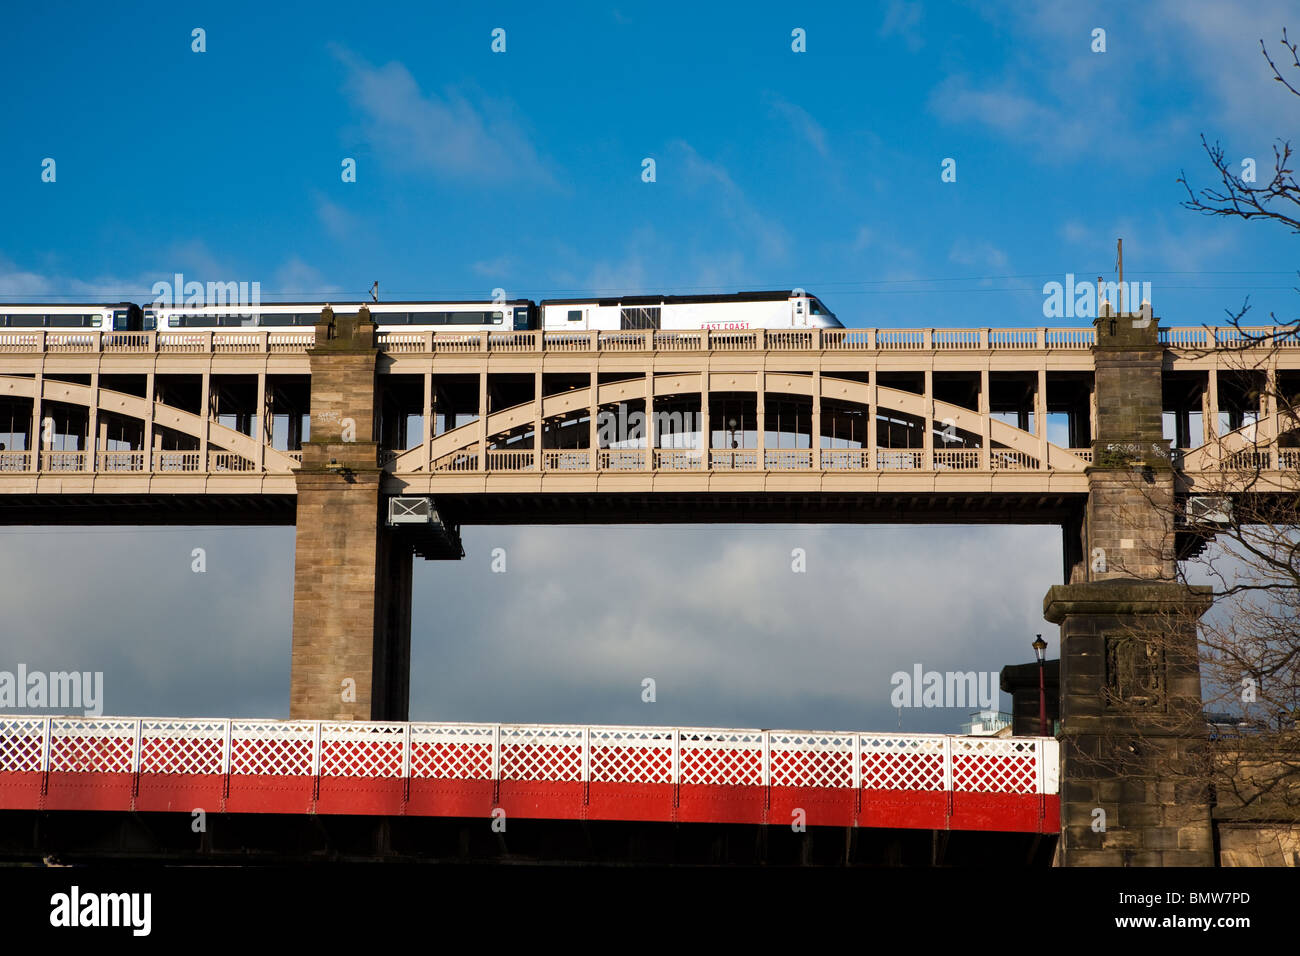 High Speed Train über eine Schiene Brücke über den Fluss Tyne in Newcastle am Tyne. Stockfoto